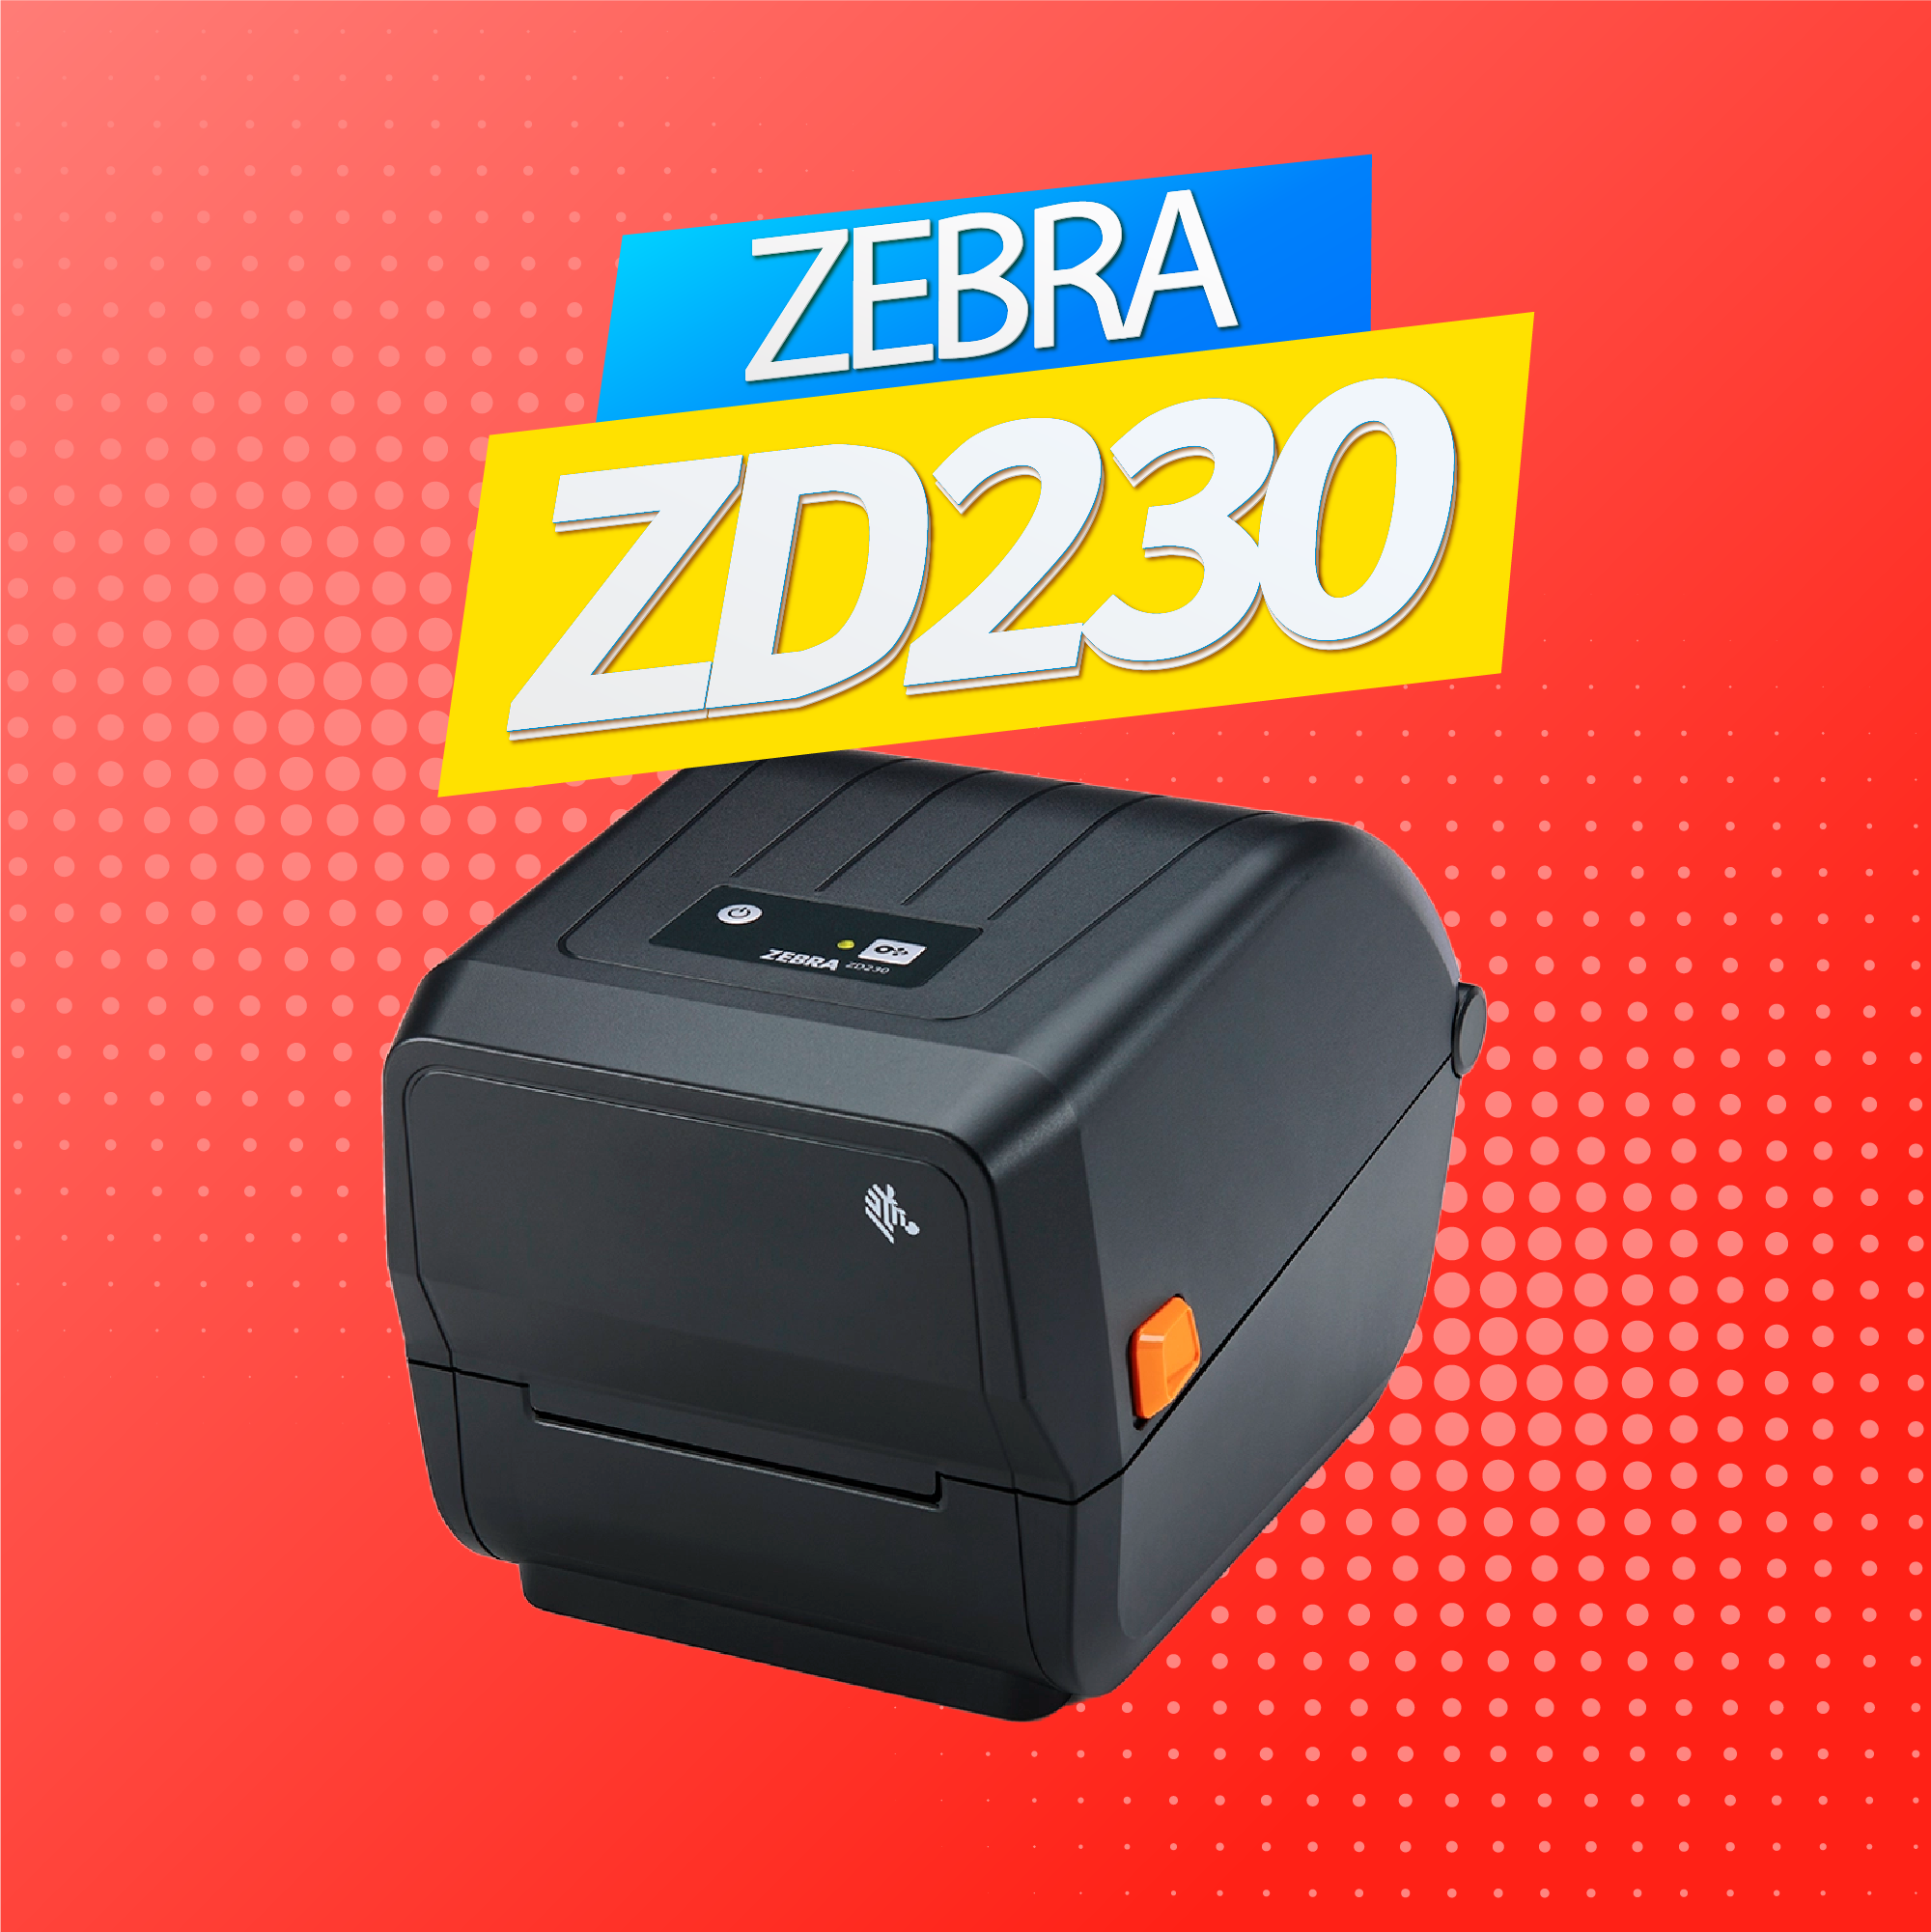 เครื่องปริ้นบาร์โค้ด Zebra ZD230 Printer Barcode